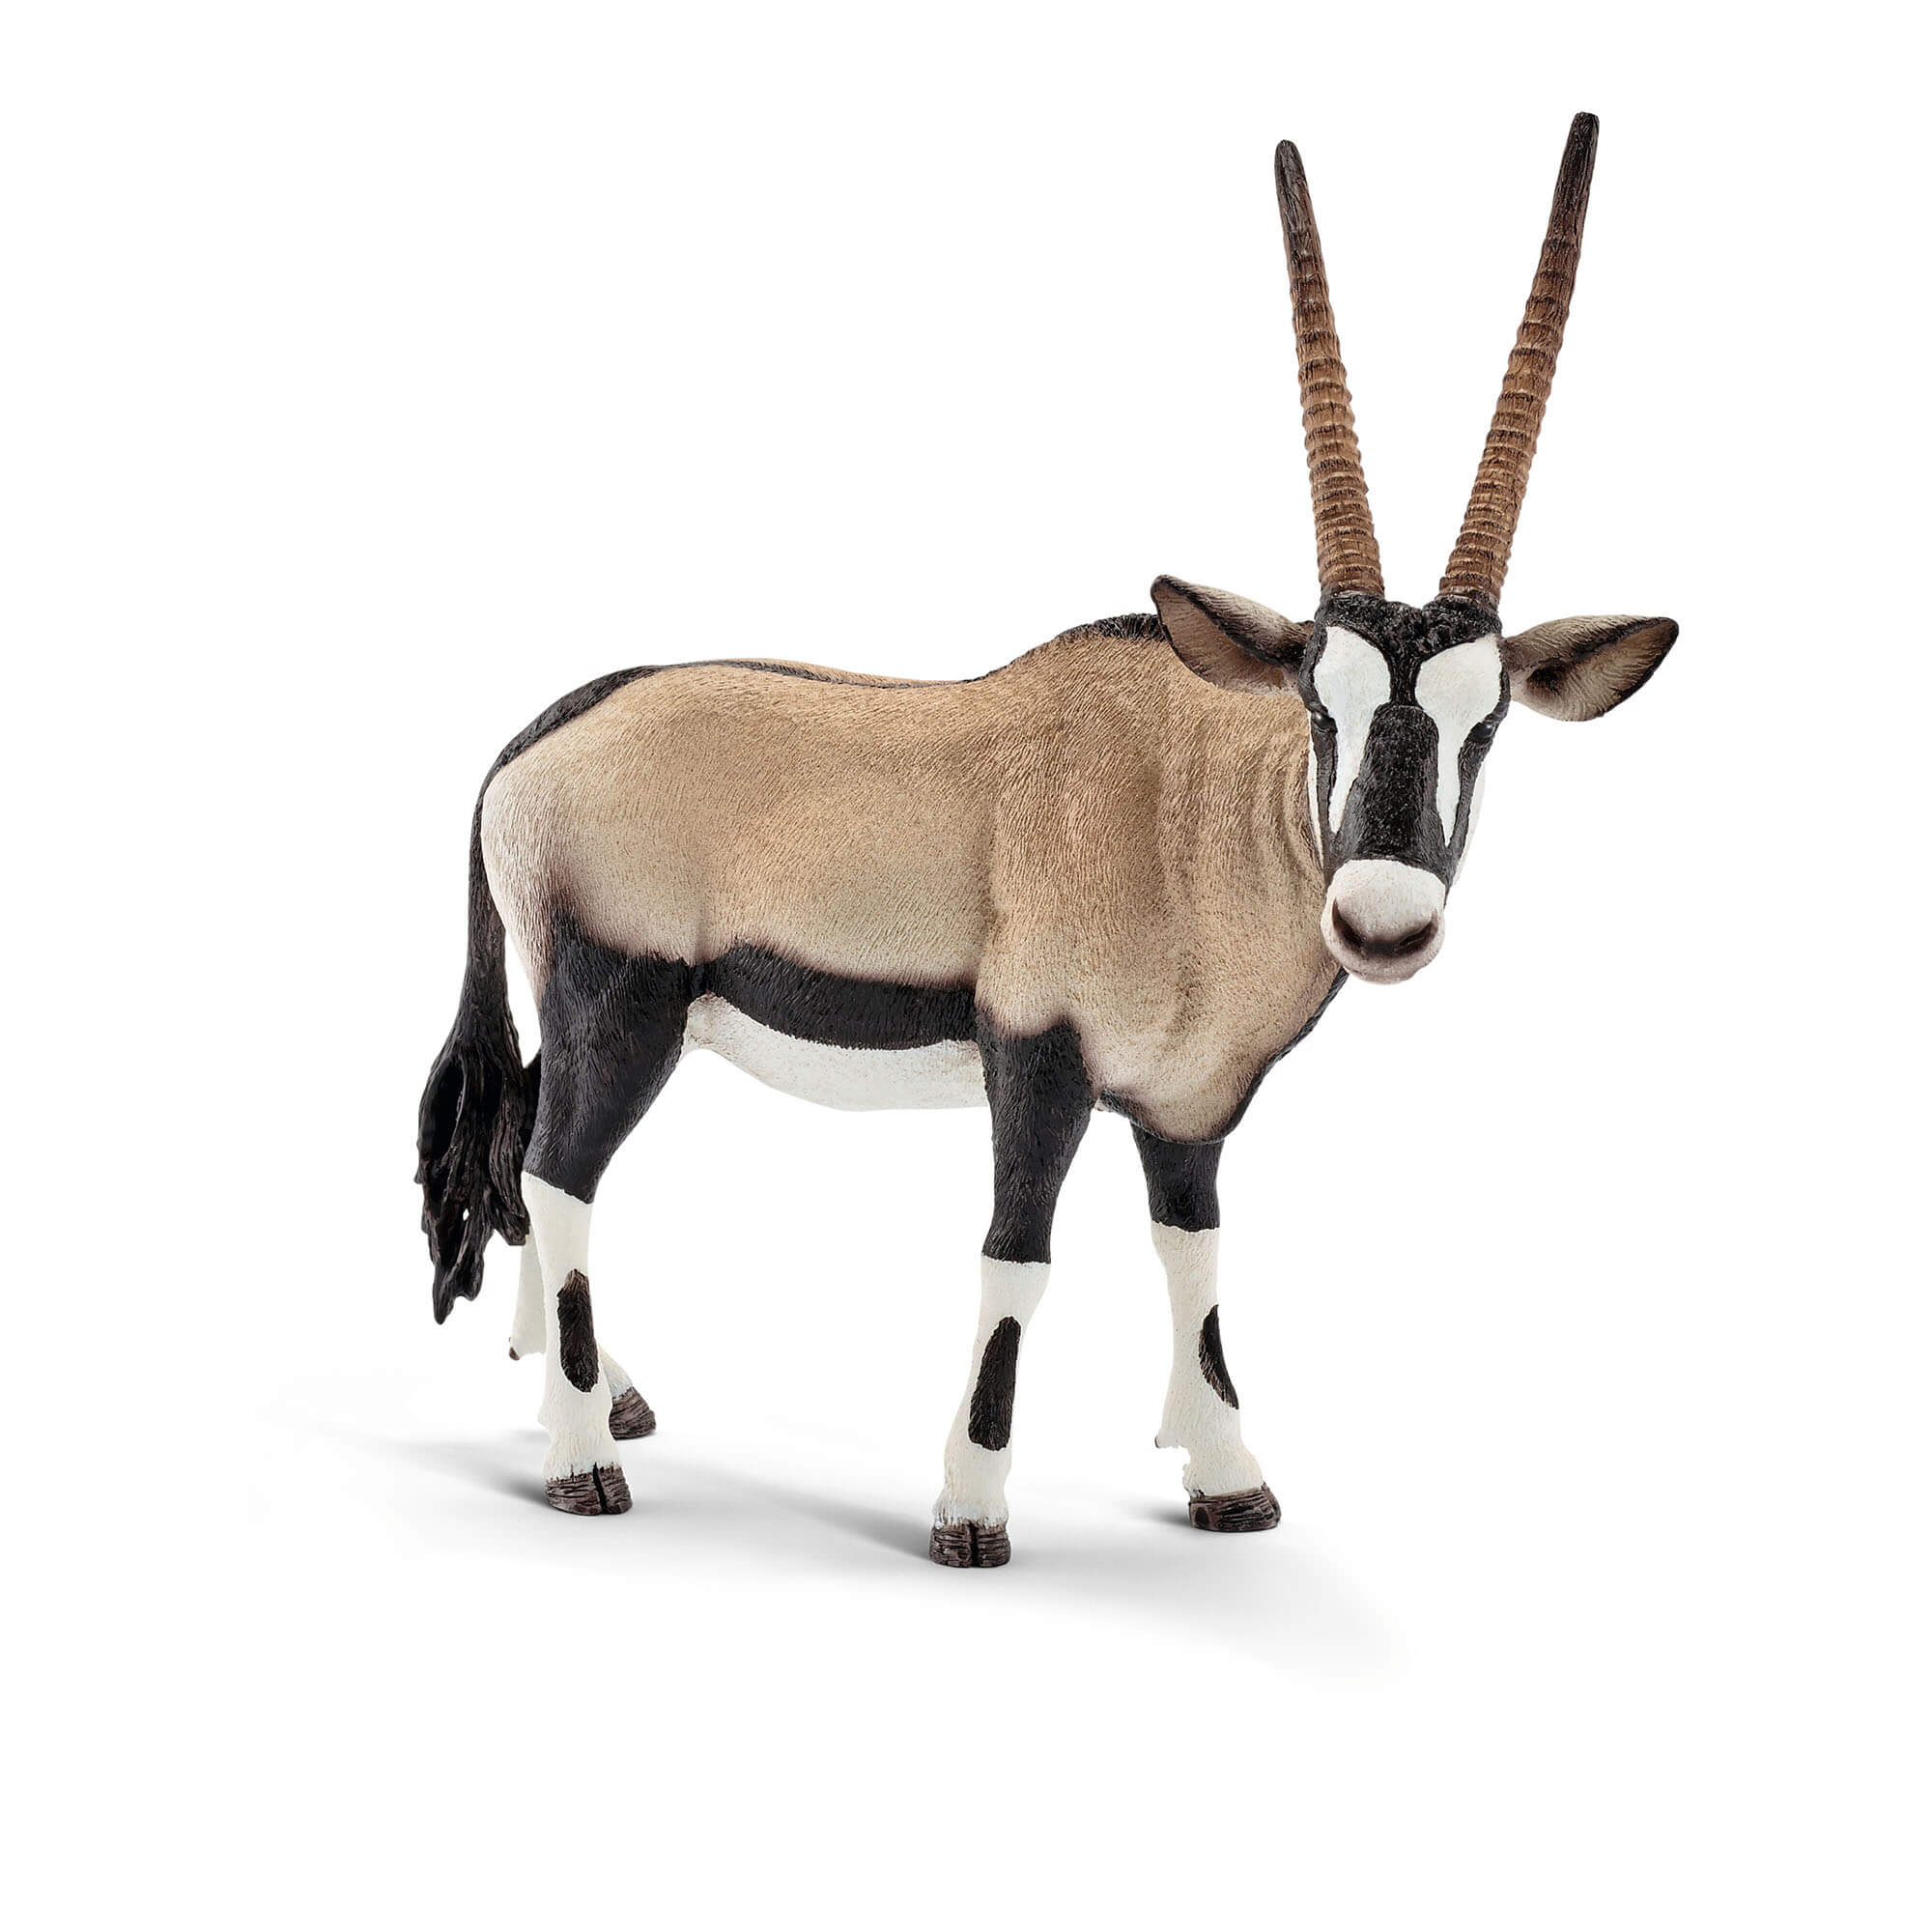 Schleich Wild Life Oryx Animal Figure